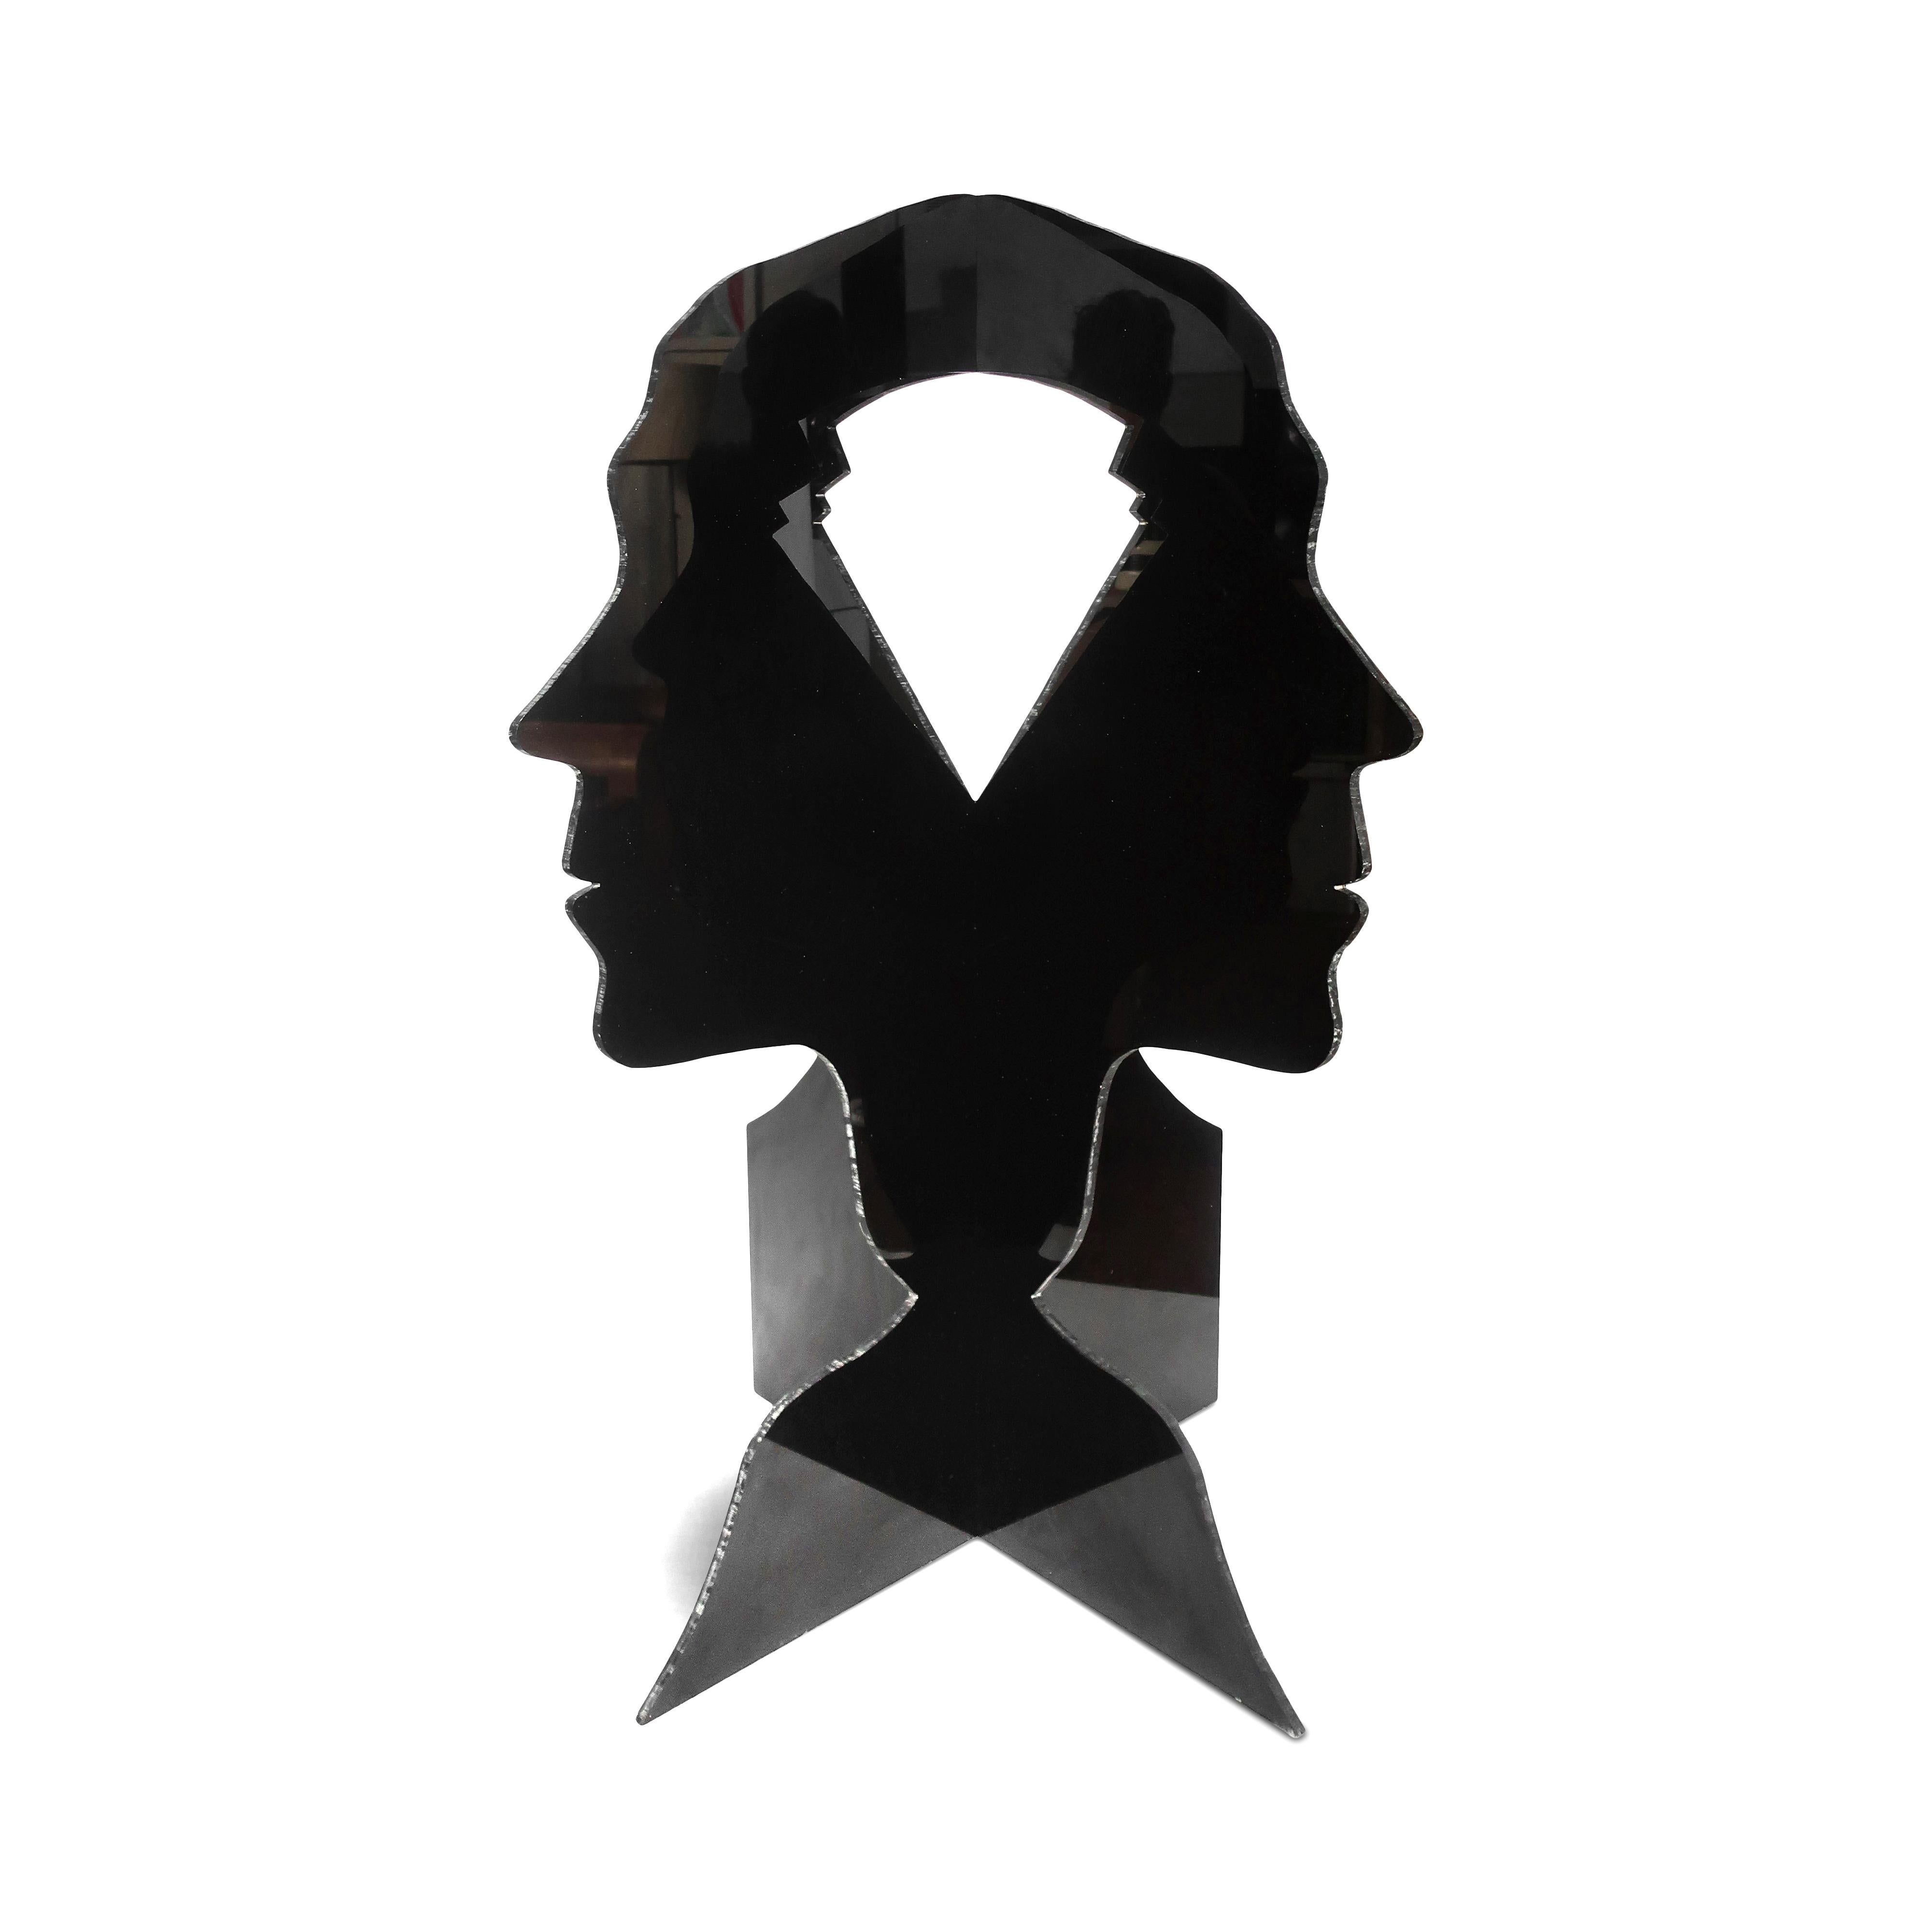 Une étonnante grande sculpture tridimensionnelle représentant la silhouette de la tête, du cou et des épaules d'une personne, construite à partir de deux morceaux de lucite noire. Les deux pièces ont chacune une forme découpée à l'endroit où se